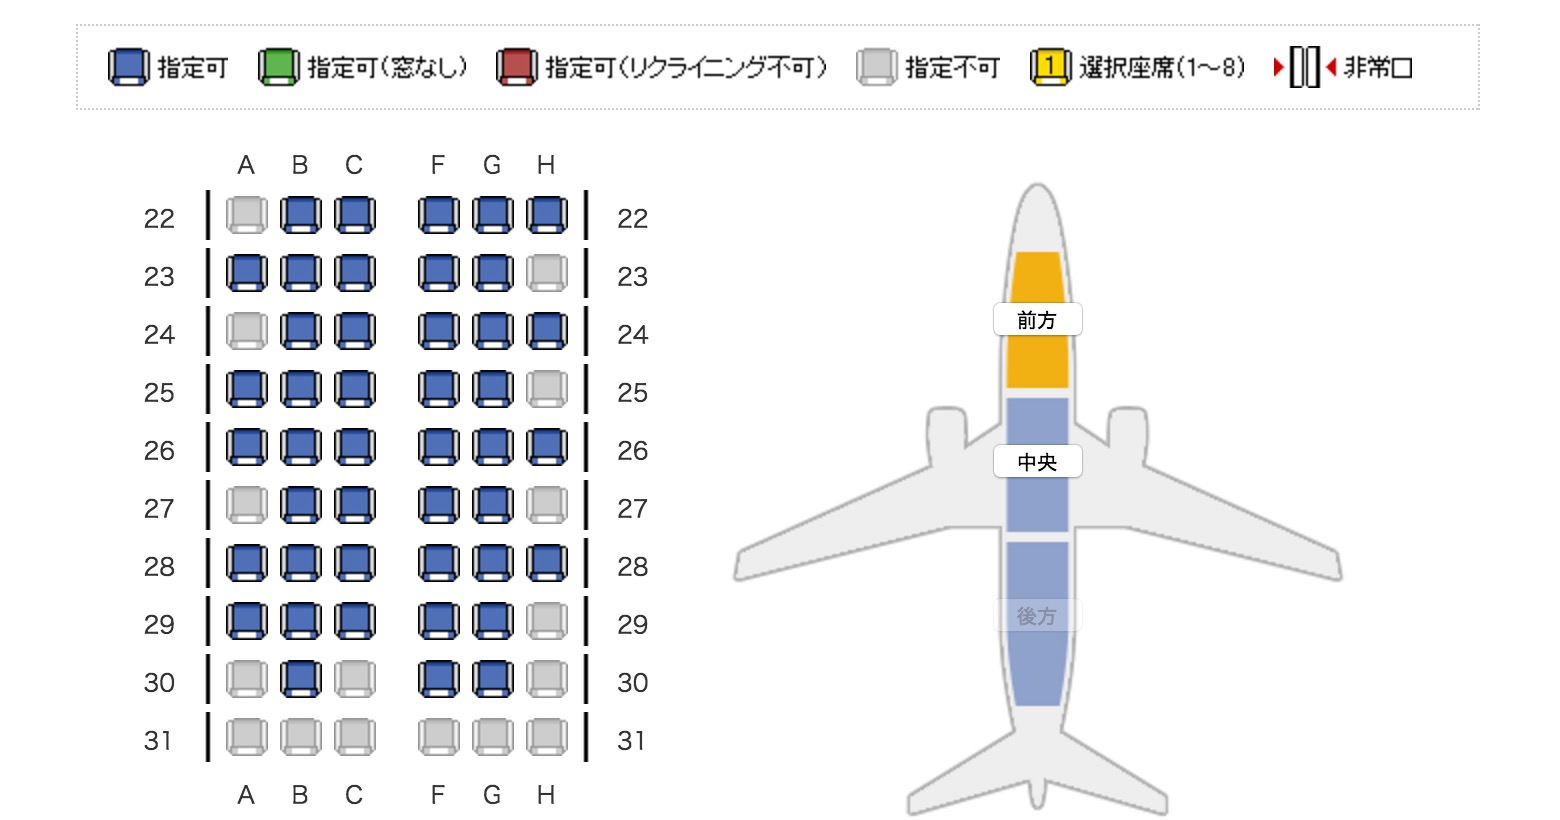 機内座席表